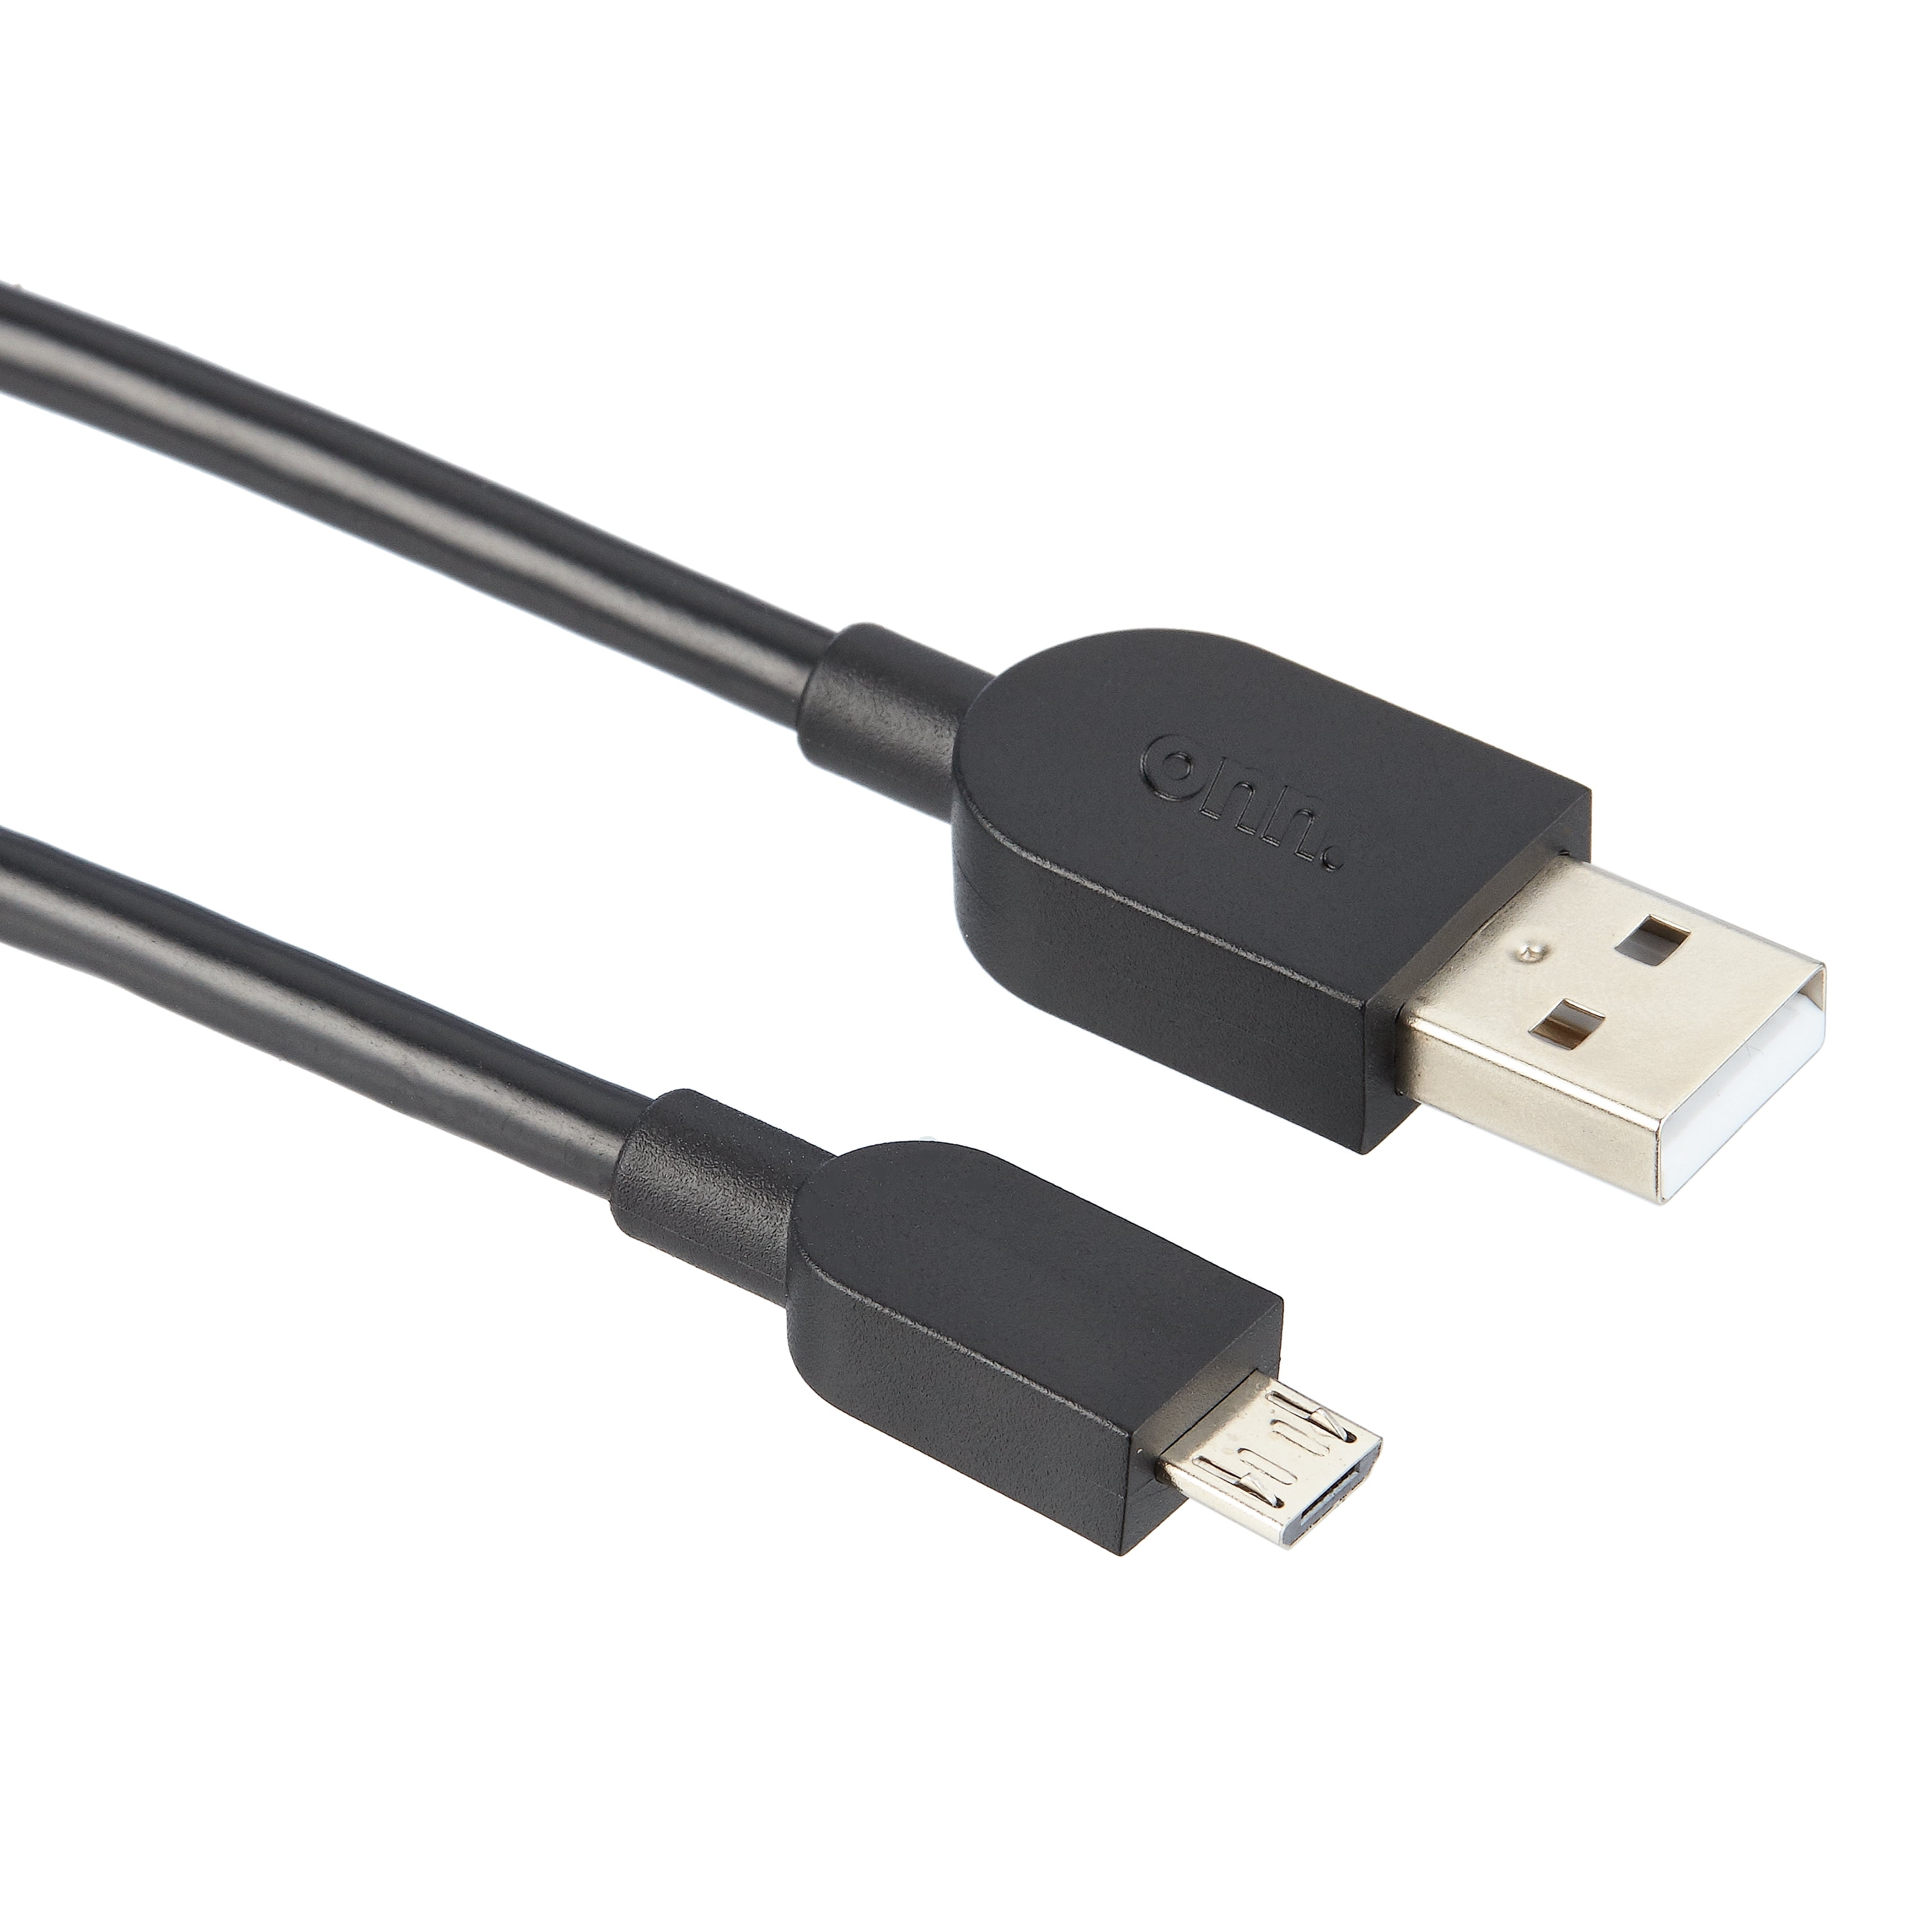 Câble charge USB manette PS4 pas cher 